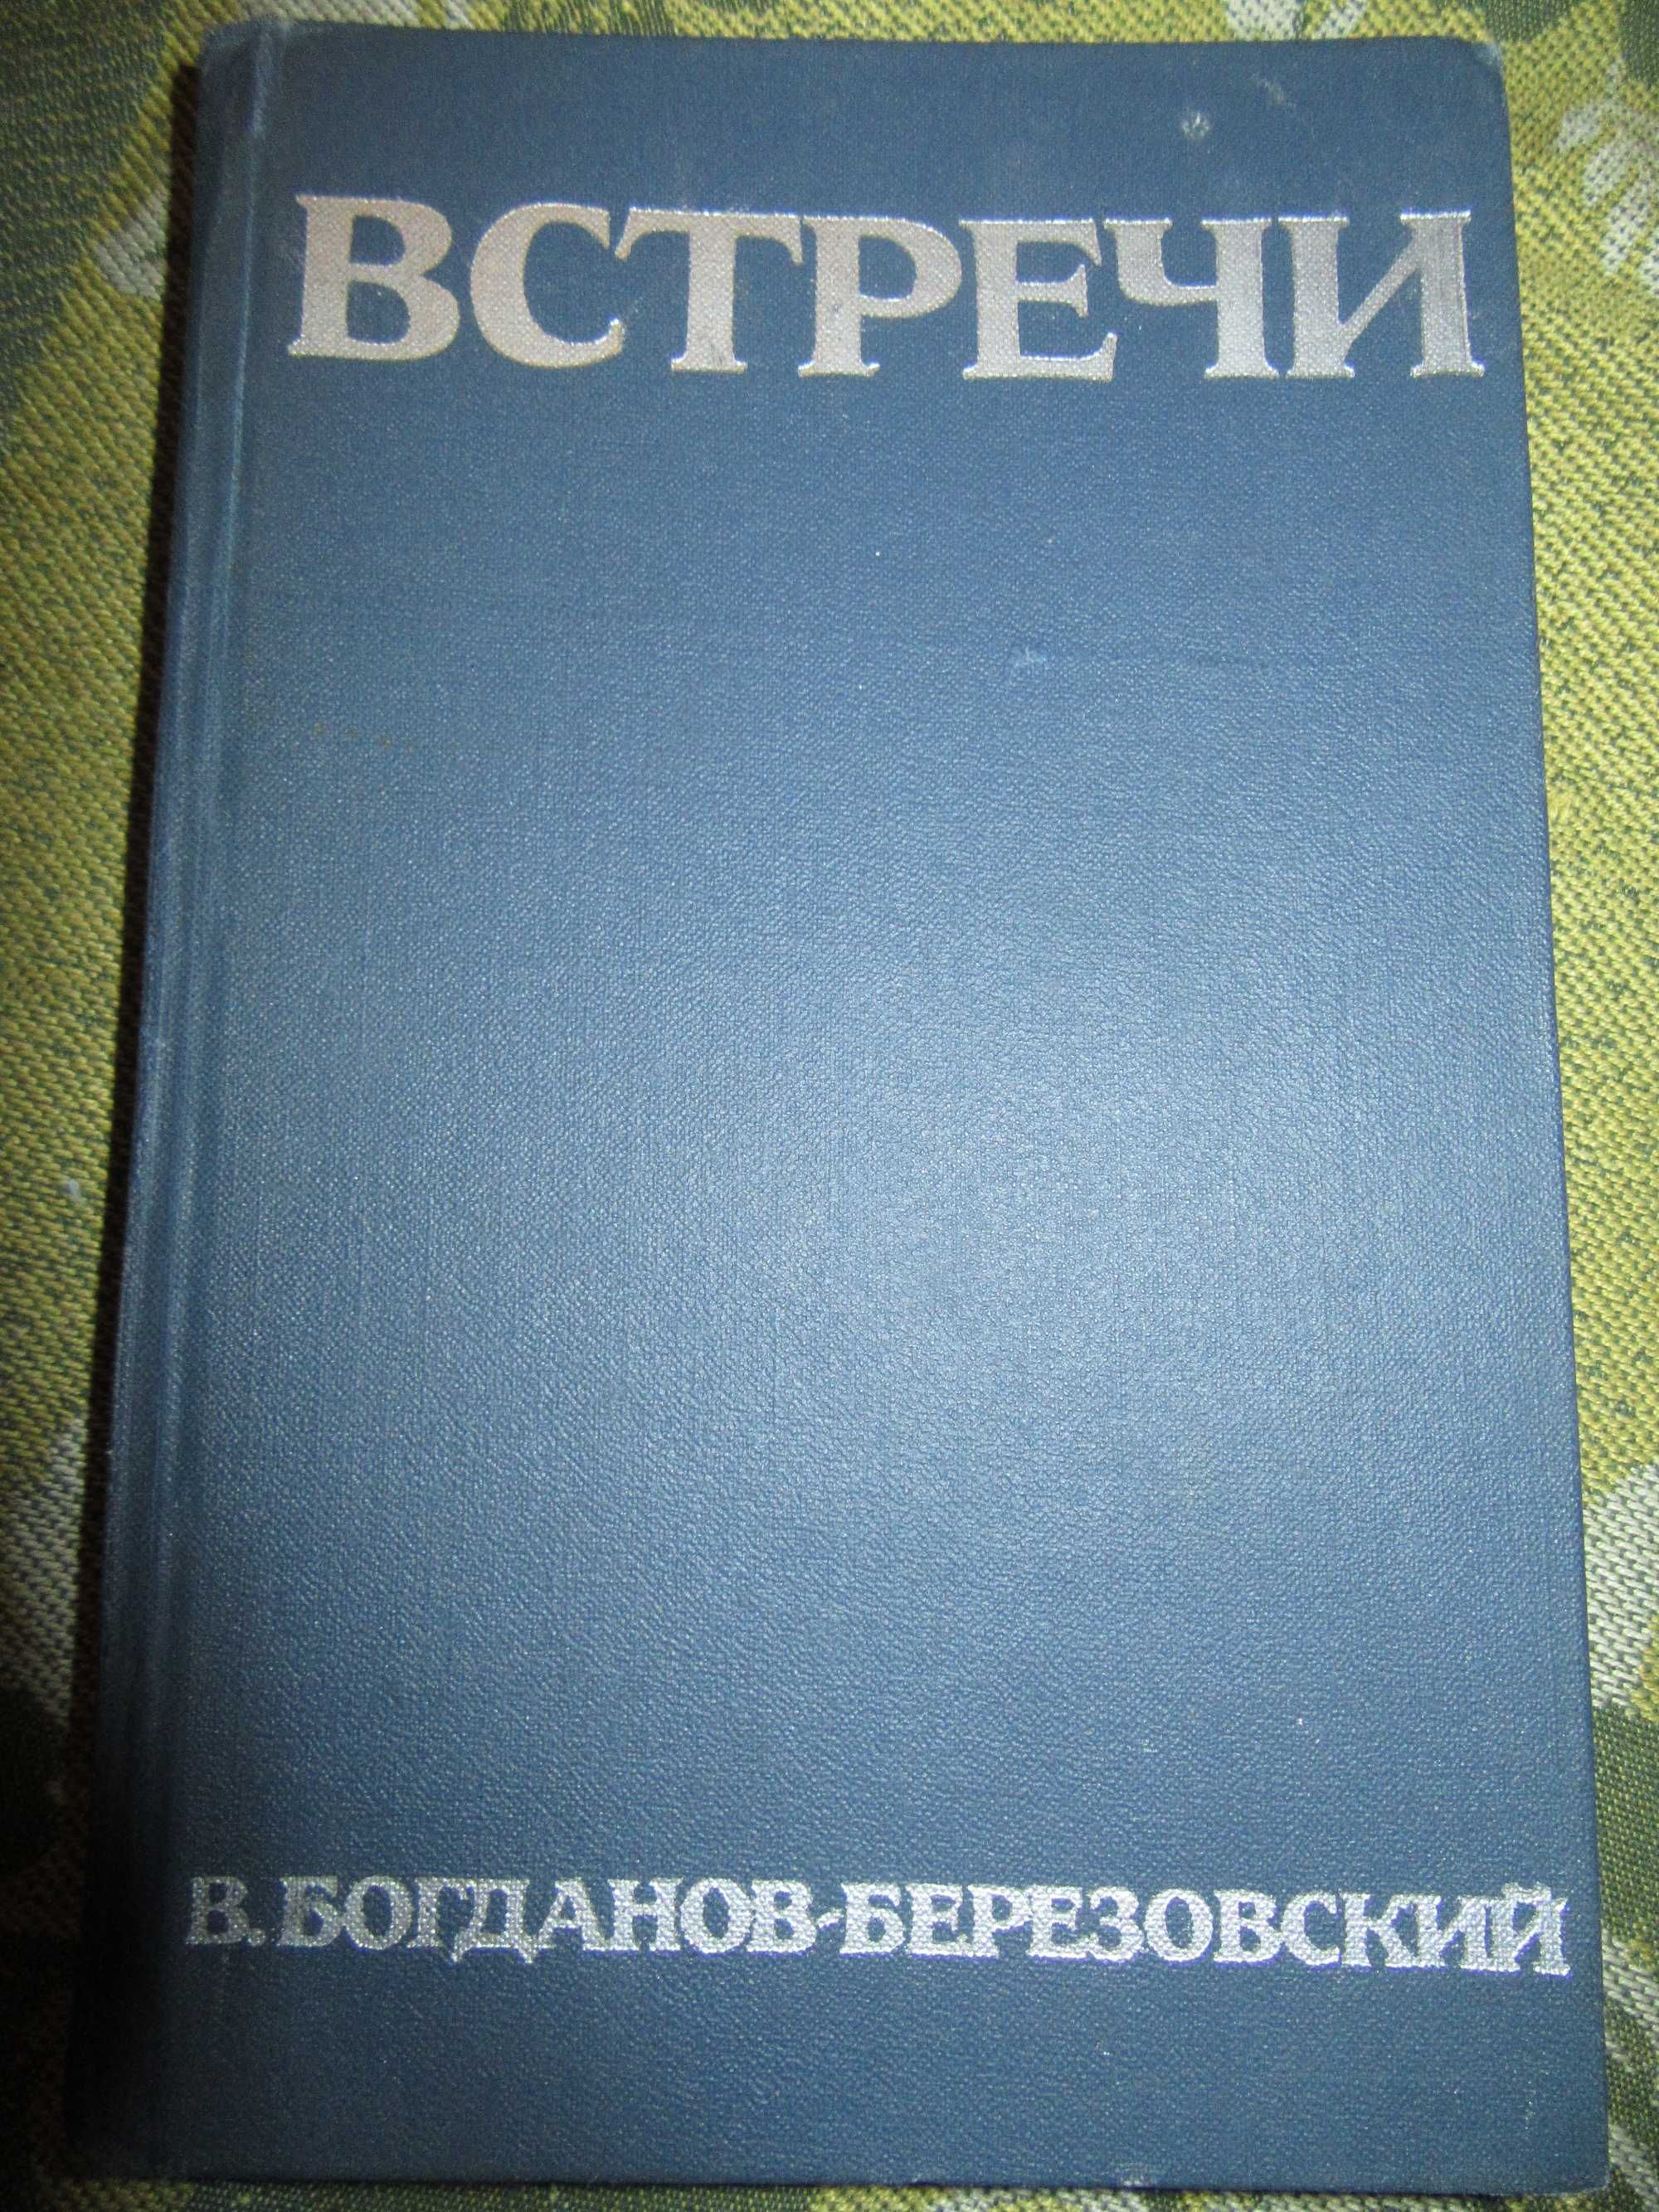 Встречи. Богданов-Березовский Валериан Михайлович."Искусство",1967 г.